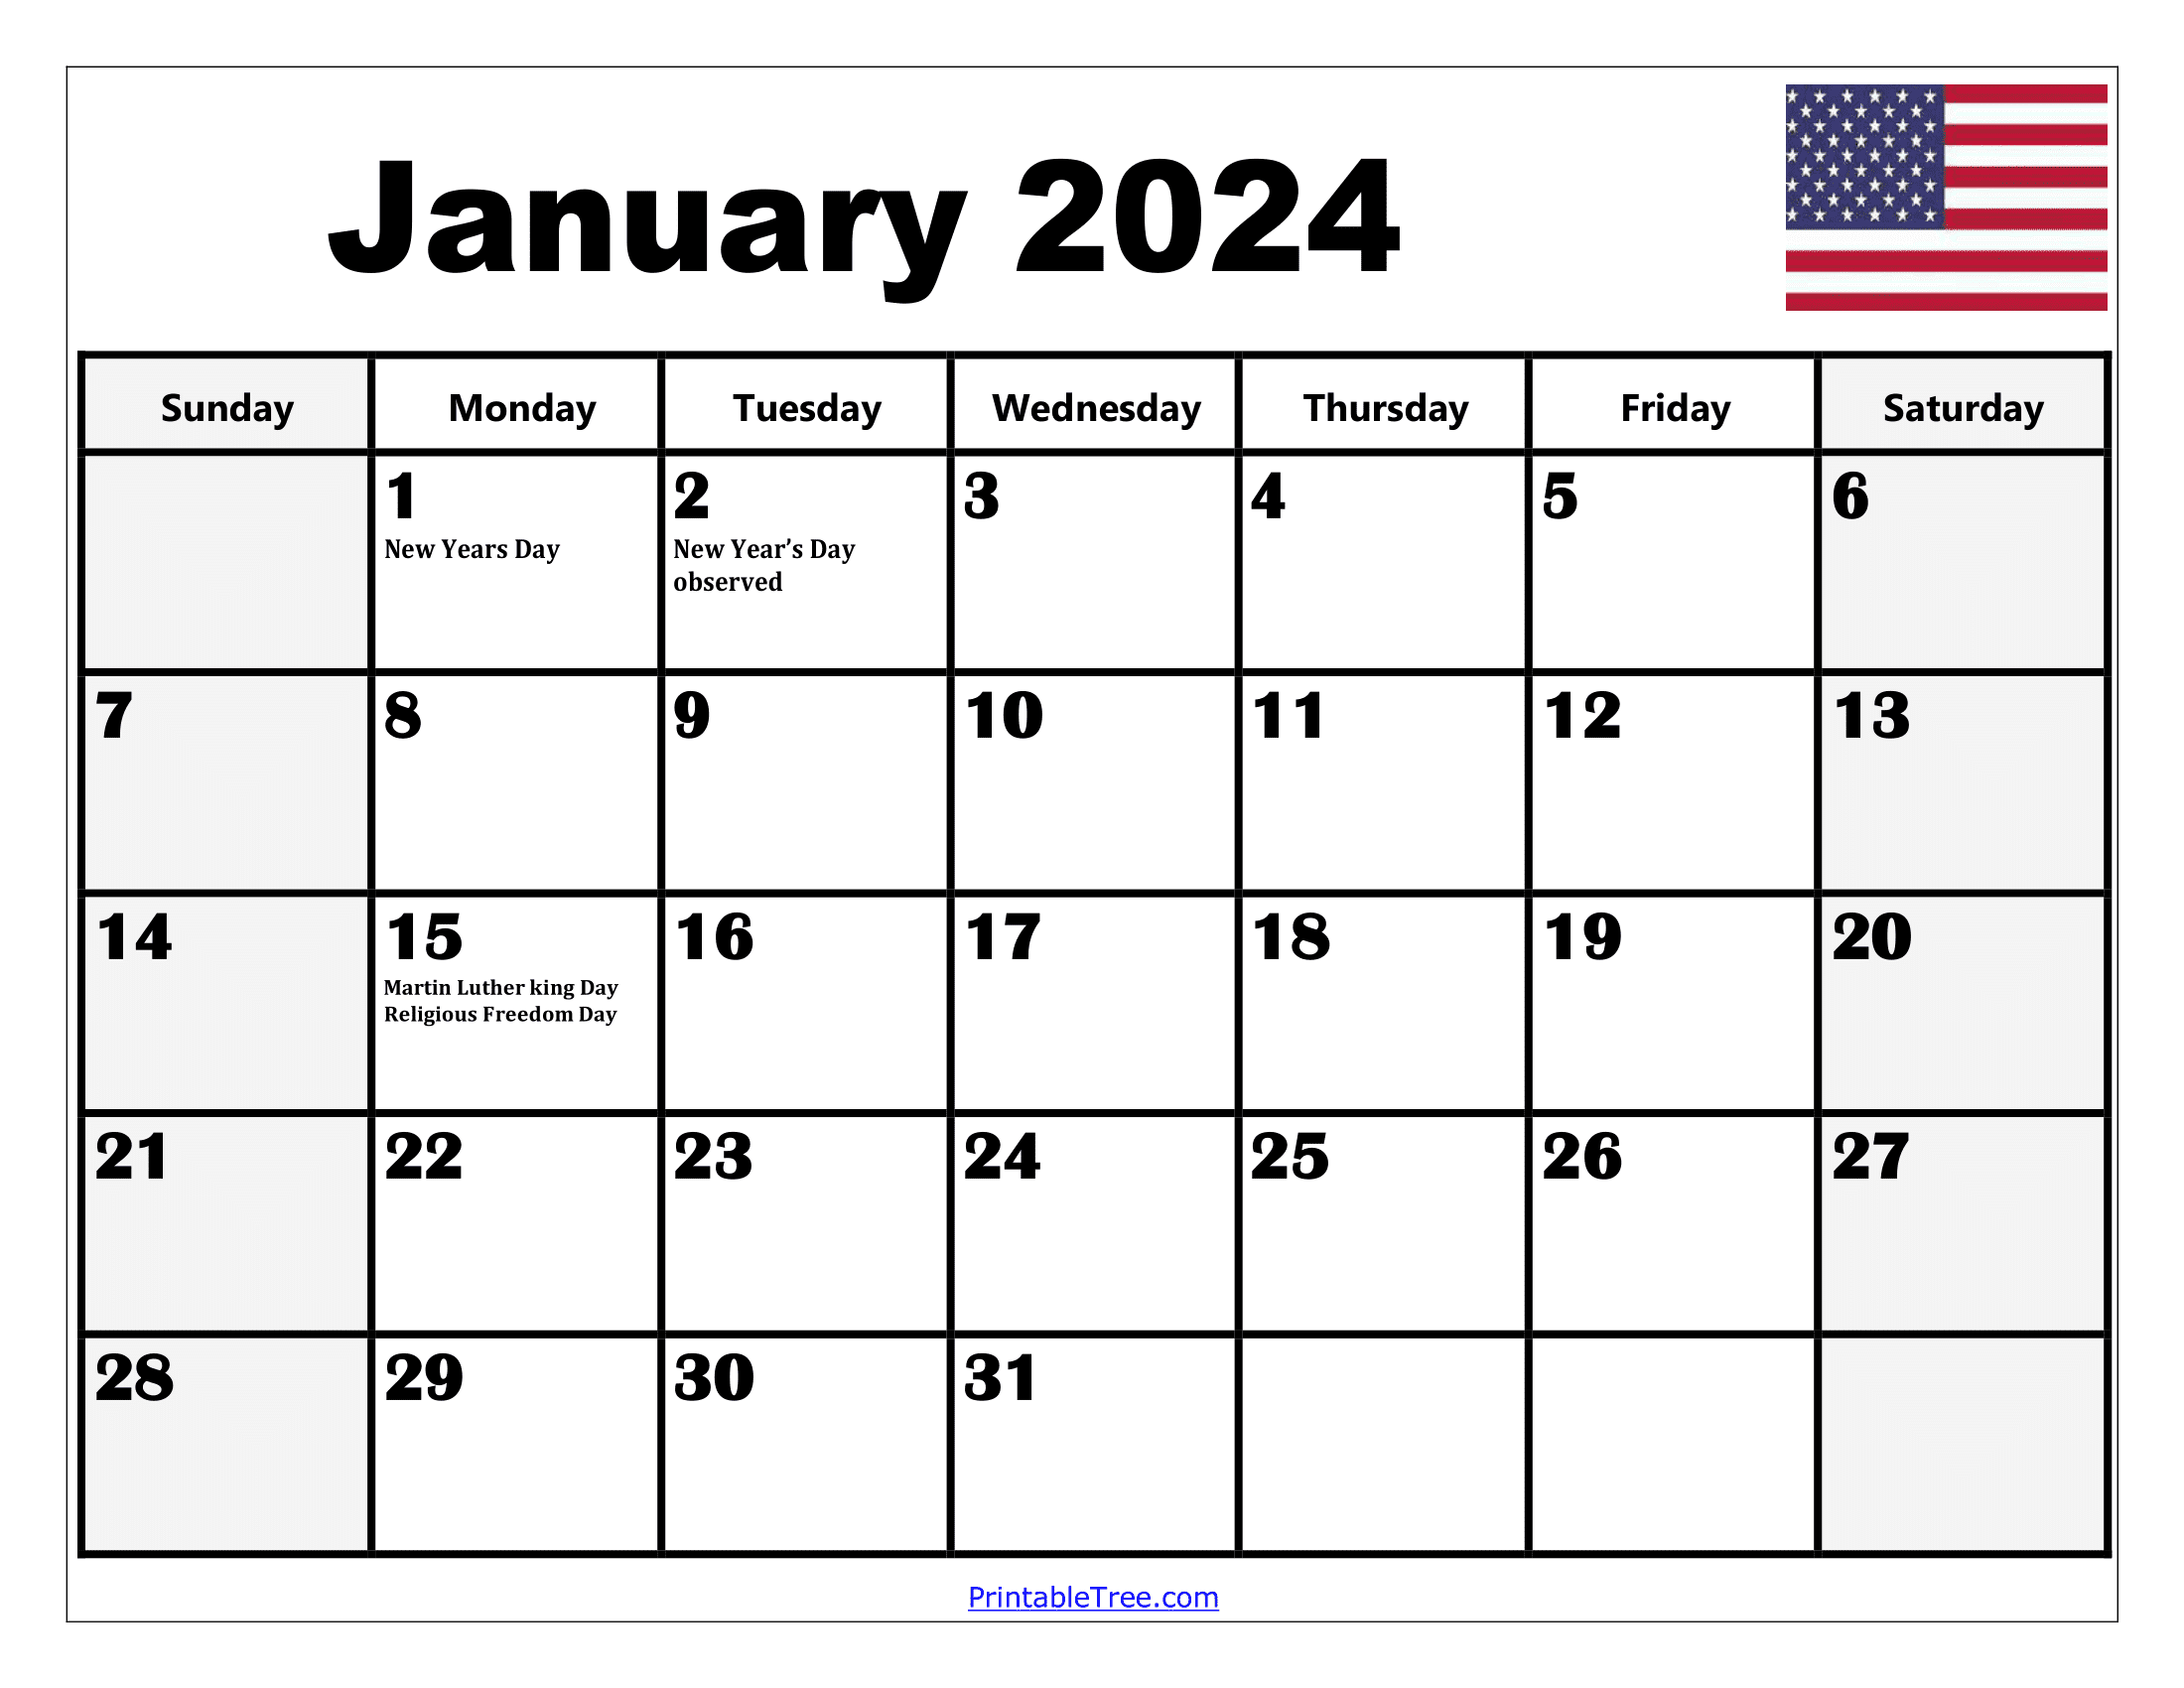 2024 Holiday Calendar Days Free Download Nov 2024 Calendar - Free Printable 2024 Calendar With Holidays Templates